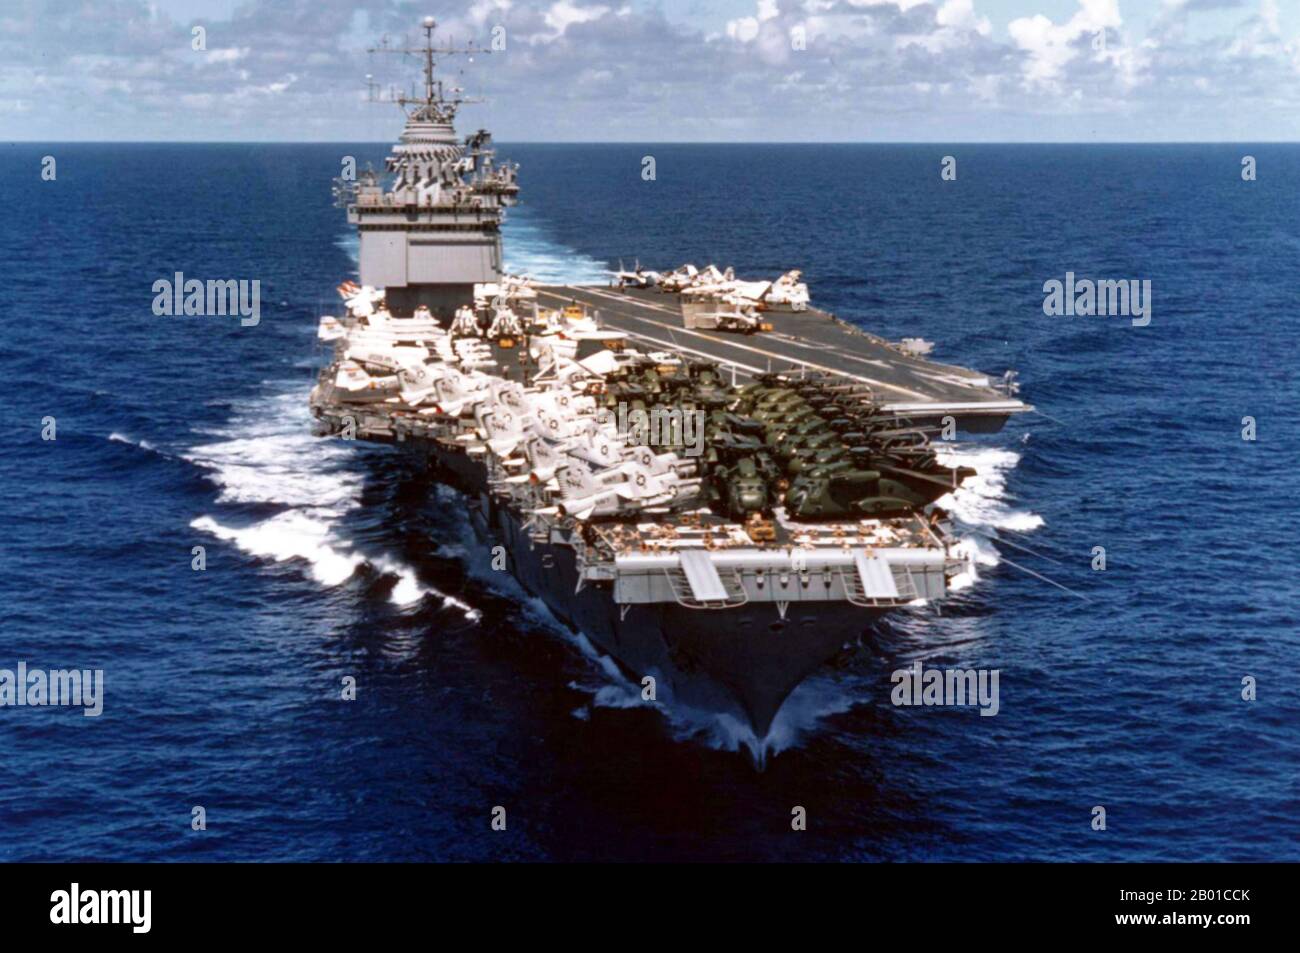 Vietnam/USA: La portaerei US Navy USS Enterprise caricata nei cannoni con elicotteri e aerei evacuati da Saigon, operazione Frequent Wind, 20 maggio 1975. La portaerei della Marina statunitense USS Enterprise (CVAN-65) è in corso di ritorno negli Stati Uniti da una crociera nel Pacifico occidentale che includeva l'evacuazione di Saigon. L'aereo sul suo ponte include gli elicotteri del corpo Marino degli Stati Uniti Sikorsky CH-53 Sea Stallion, che stavano agganciando un giro a casa a bordo della nave. Ci sono piloti e/o equipaggio che prendono il sole sulla parte anteriore del ponte di volo. Foto Stock